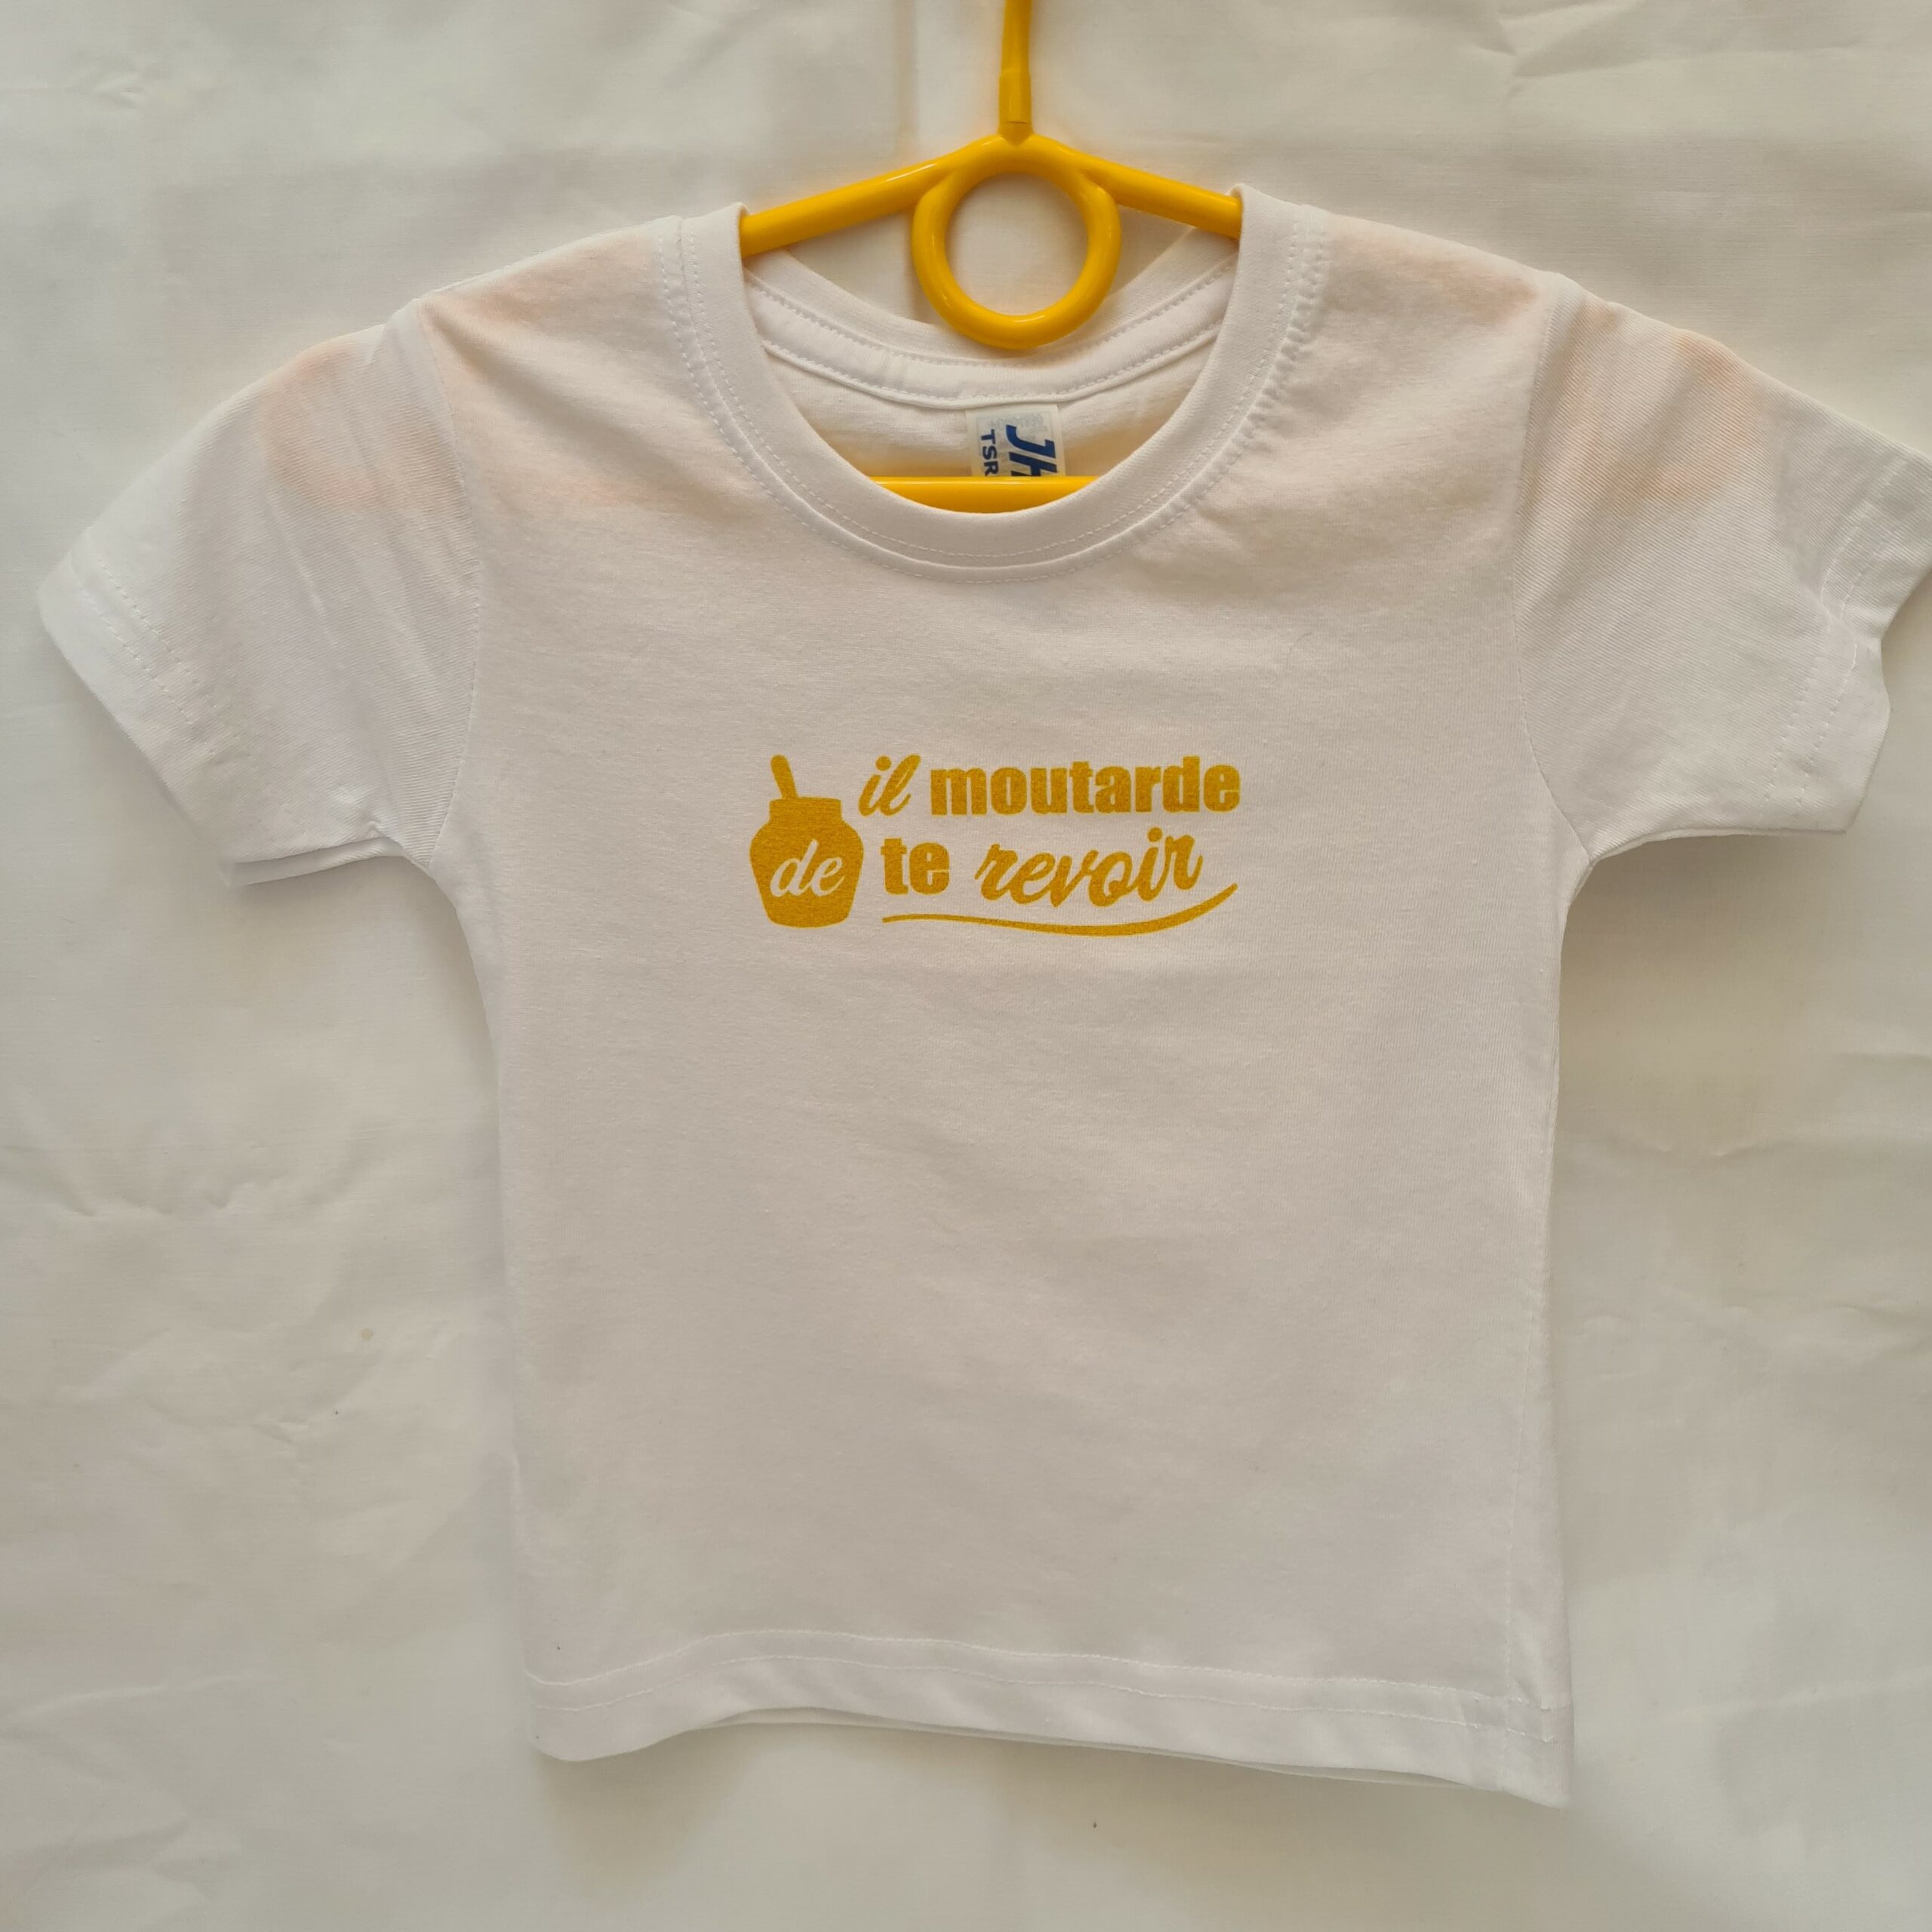 Tee-shirt enfant “Il moutarde de te revoir”  blanc